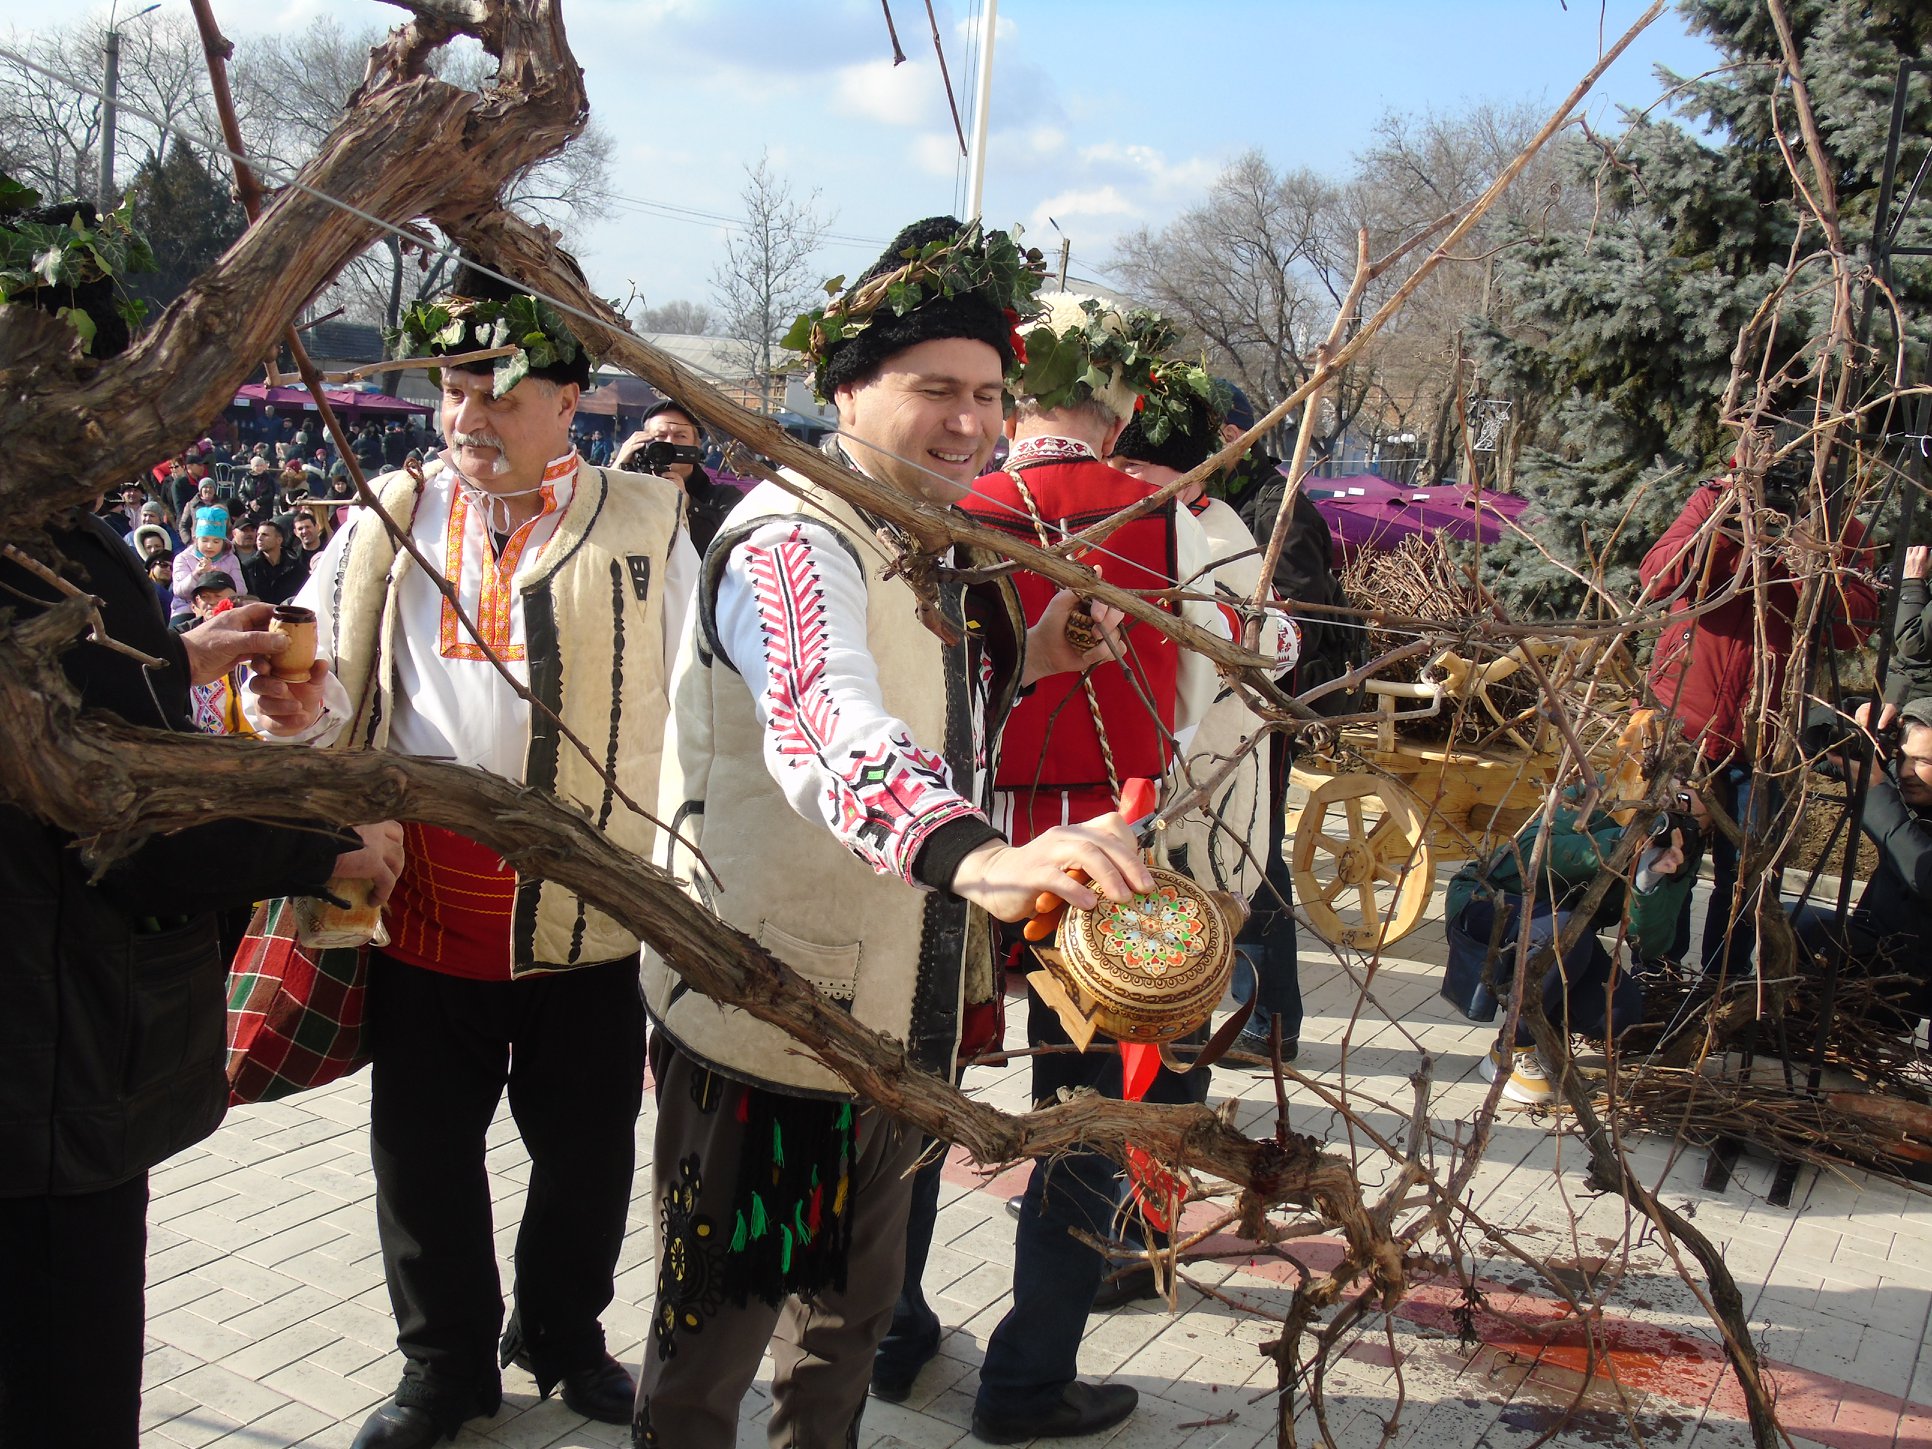 Праздники винодела в Крынычном отмечают 14 февраля - в этот день проводят первую обрезку виноградной лозы. Фото: facebook.com/dmytrodimitrov